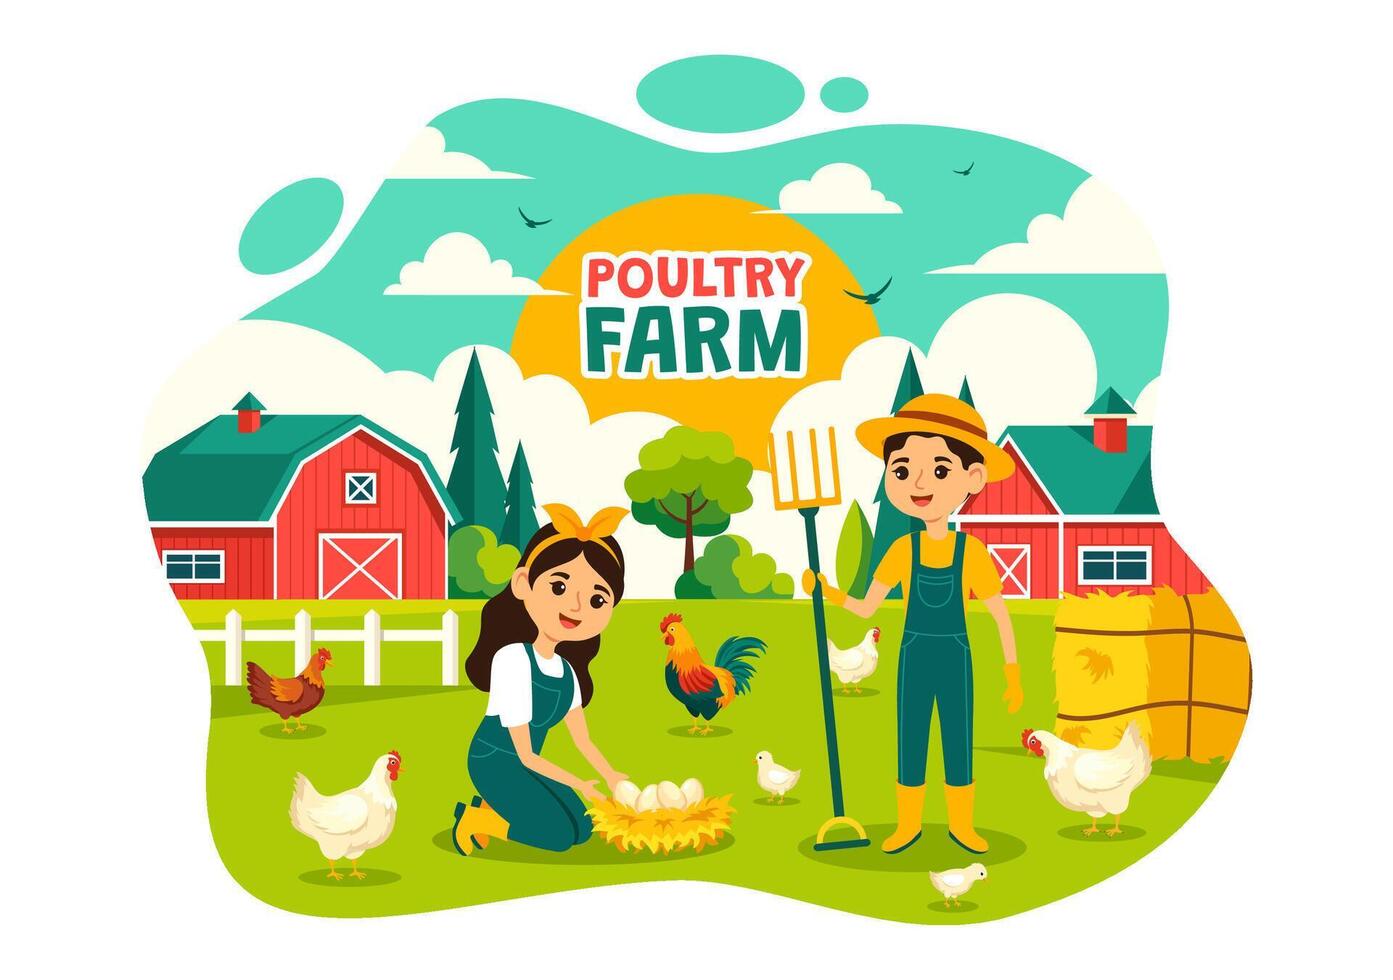 pollame azienda agricola illustrazione con polli, galli, cannuccia, gabbia e uovo su scenario di verde campo nel piatto cartone animato sfondo design vettore